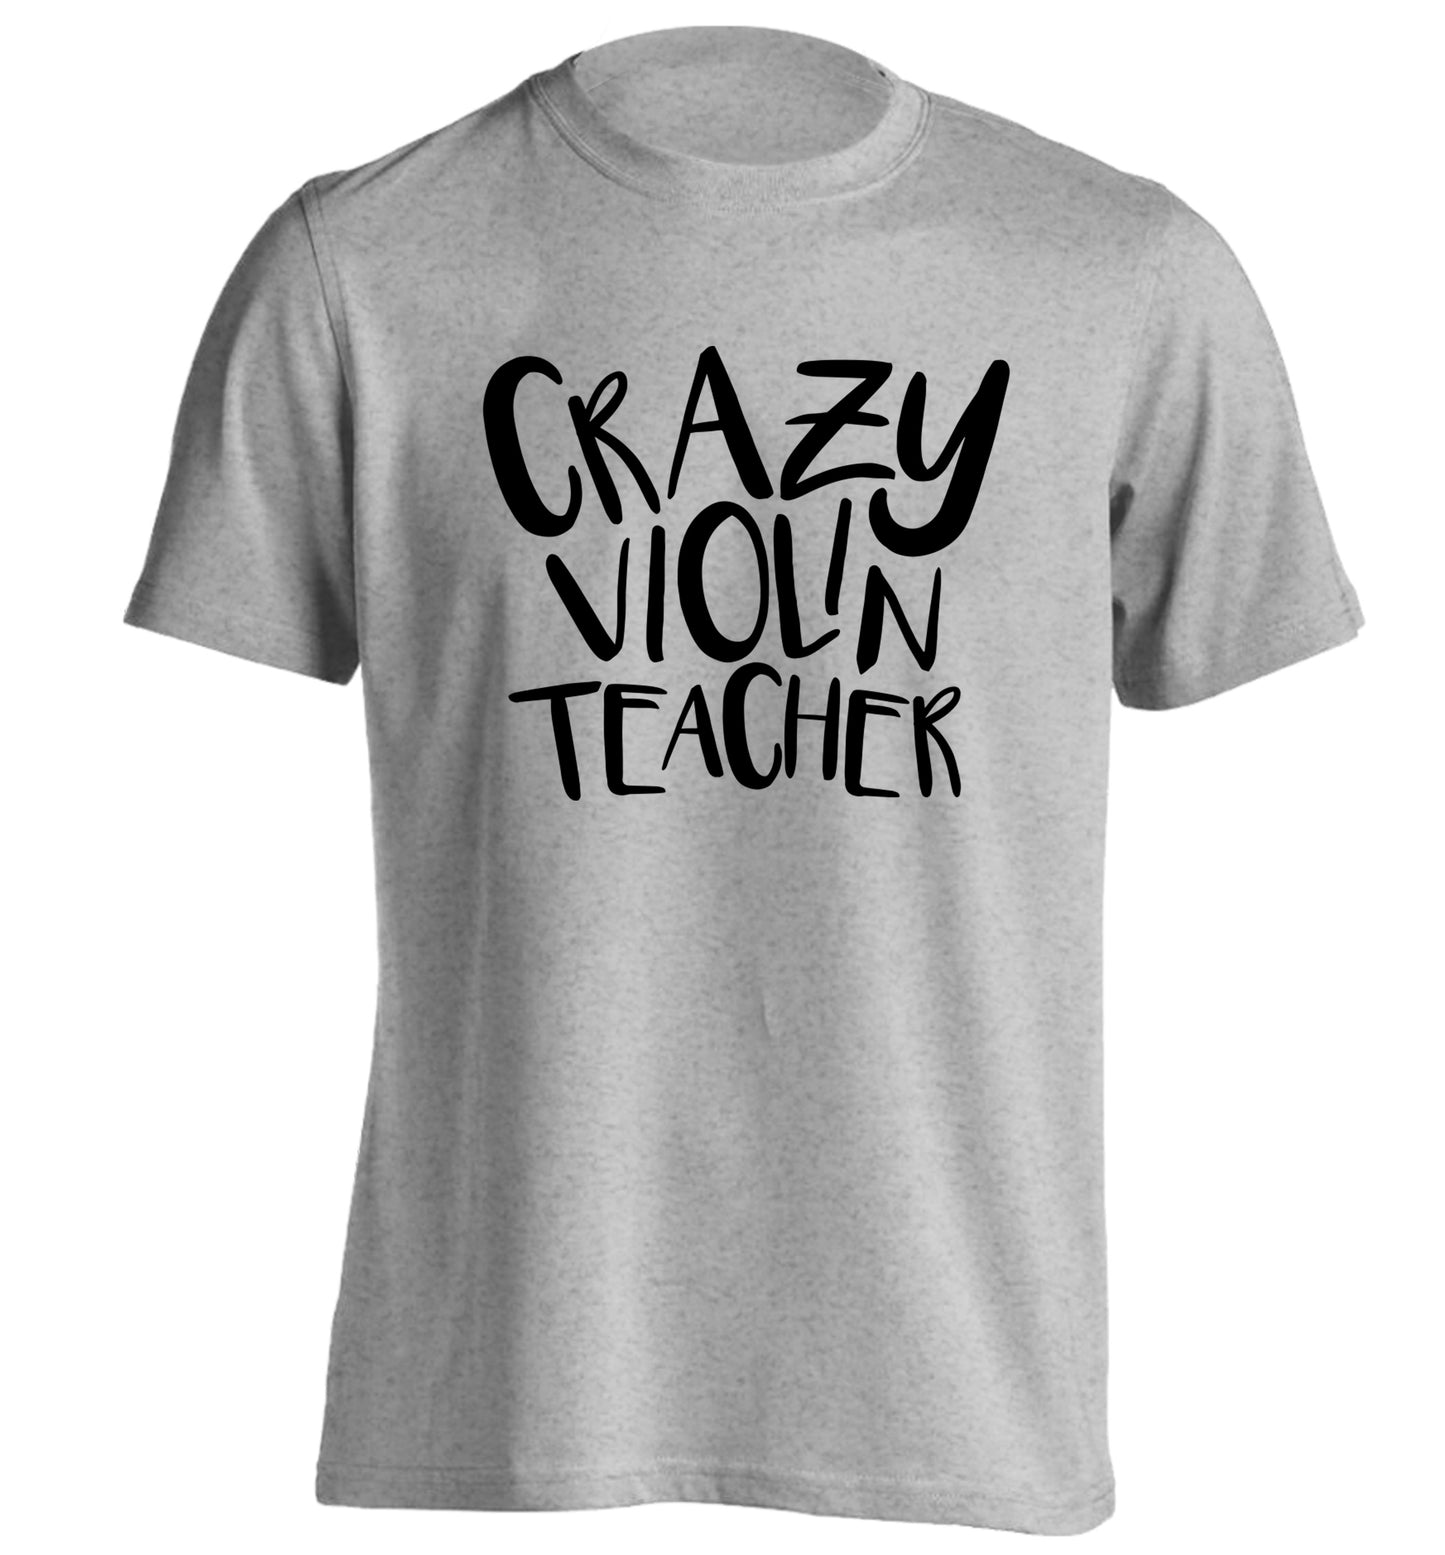 Crazy violin teacher adults unisex grey Tshirt 2XL